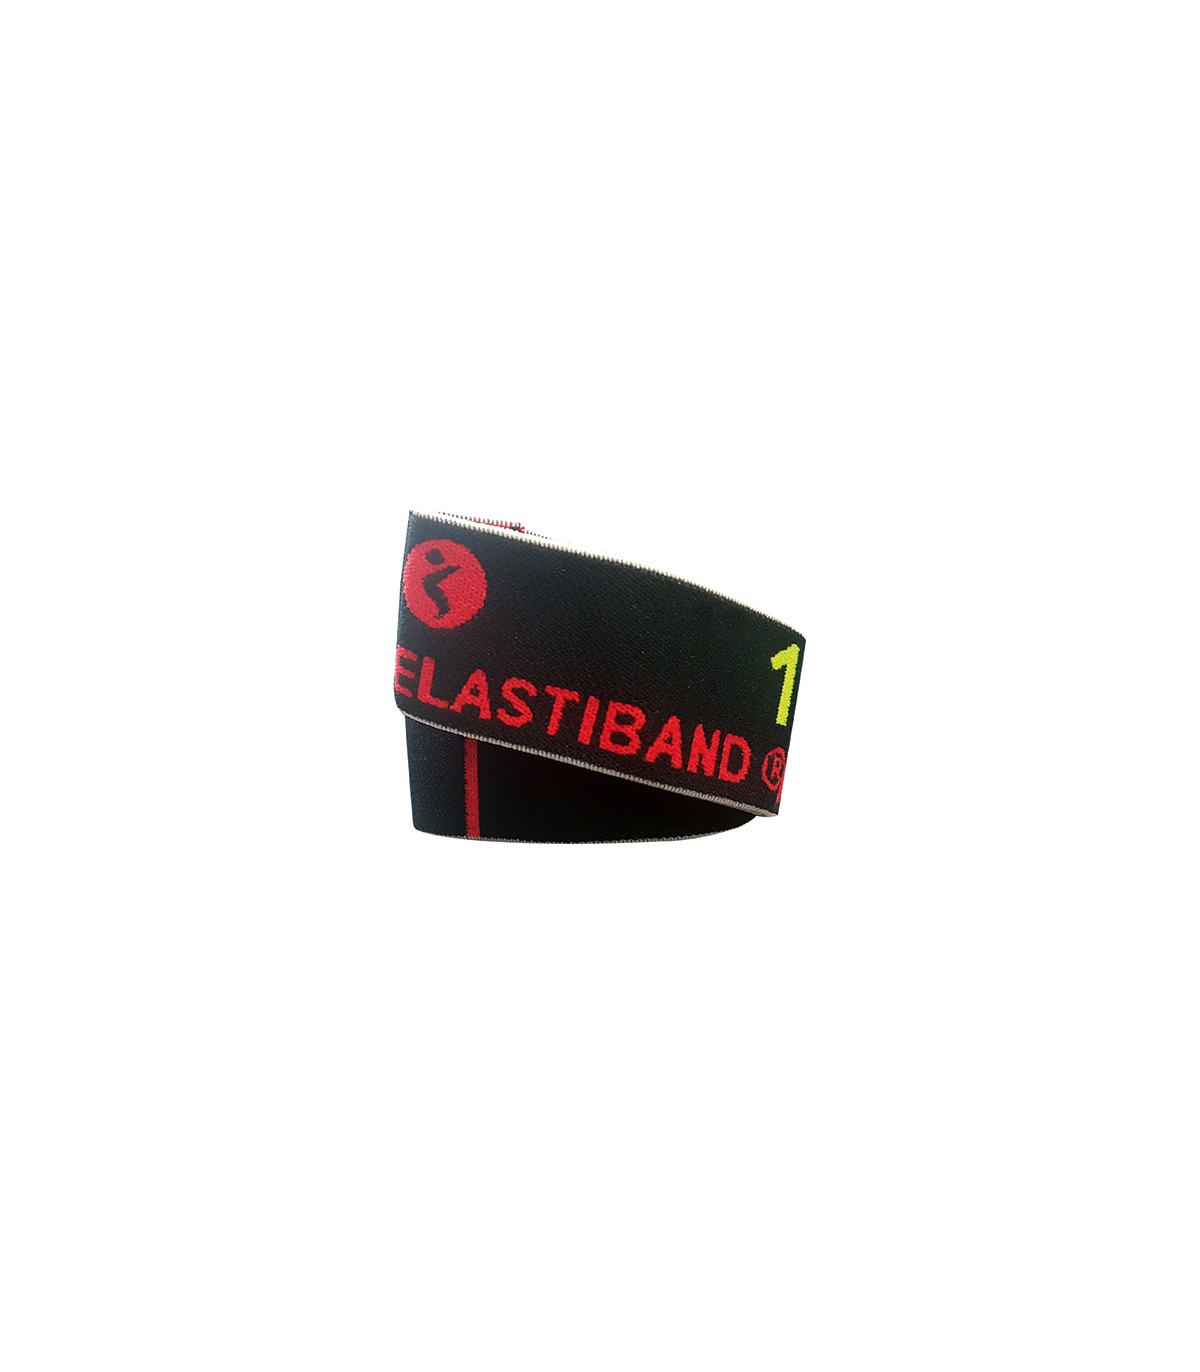 Banda elástica de agarre múltiple Elastiband + QR. Negro. 15 kg